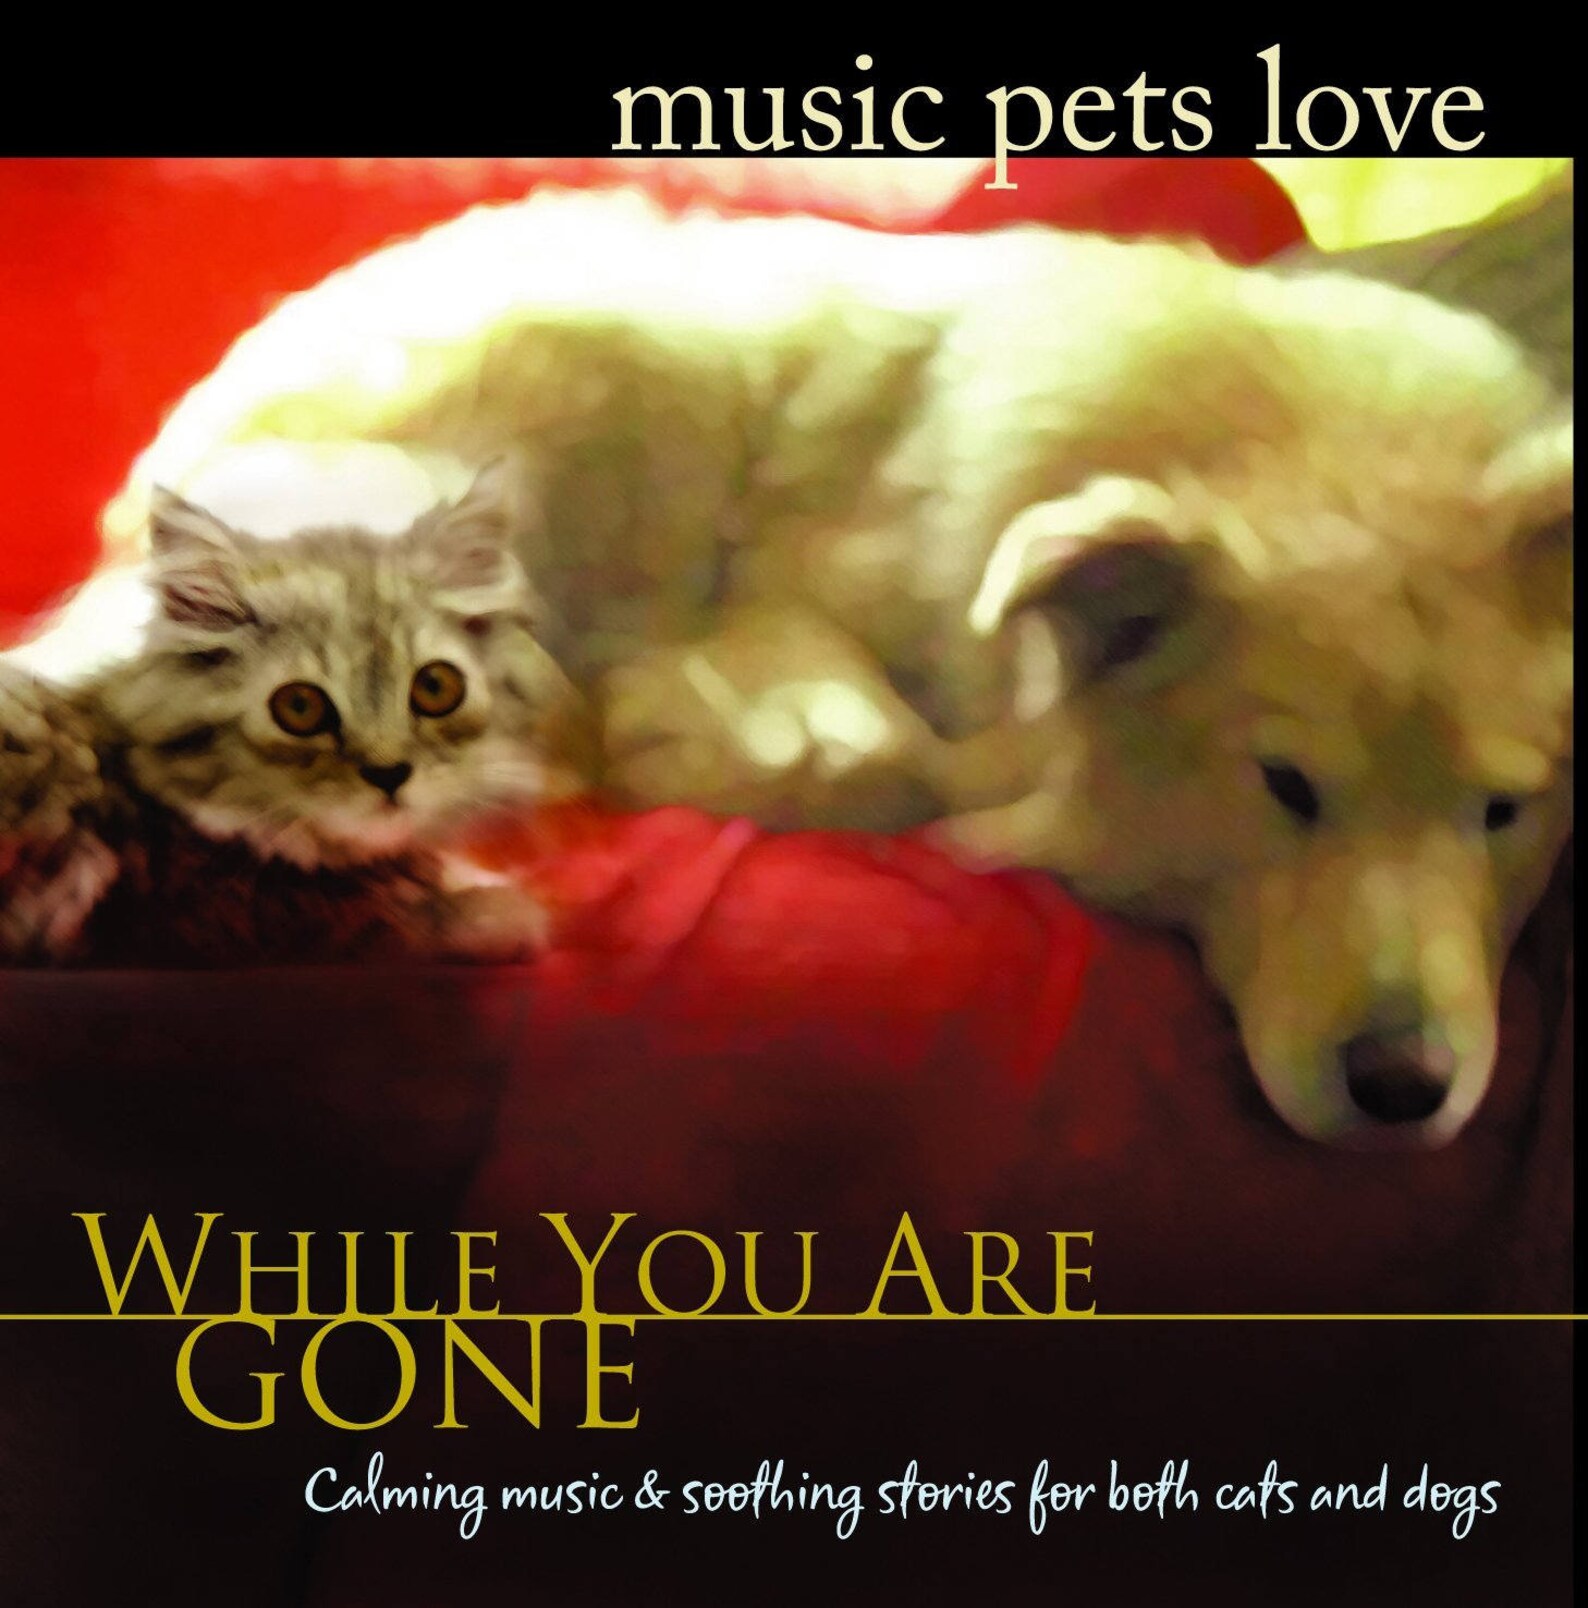 Music pets. Pet песня. Pets offer Unconditional Love. Rock musicians with Pets.